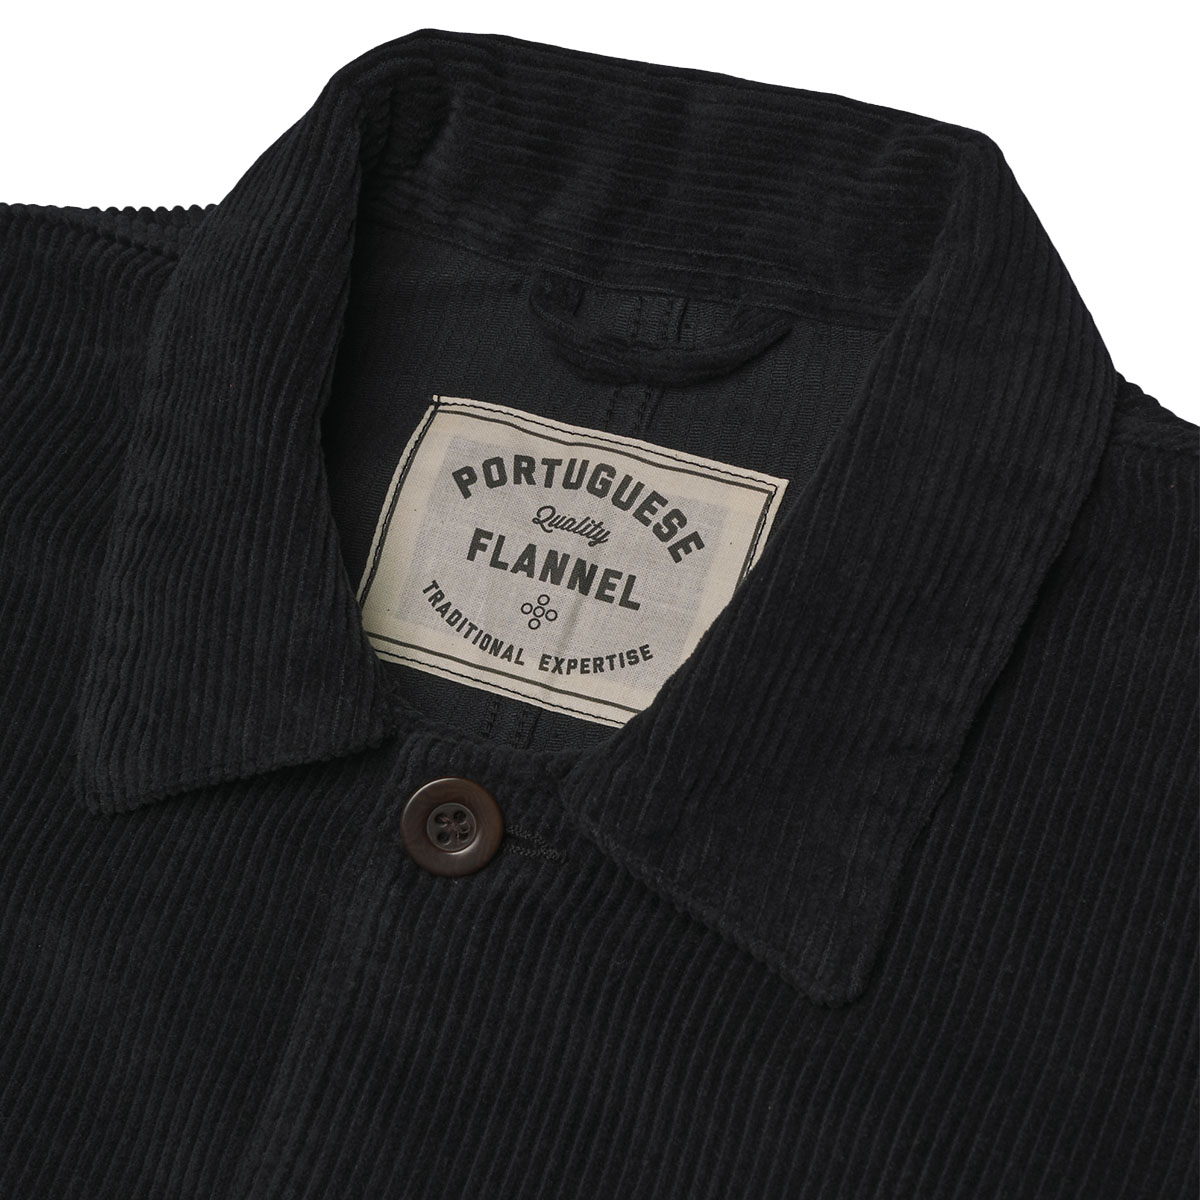 Portuguese Flannel Labura Cotton-Corduroy Overshirt Black, gemaakt van de fijnste exclusieve stoffen